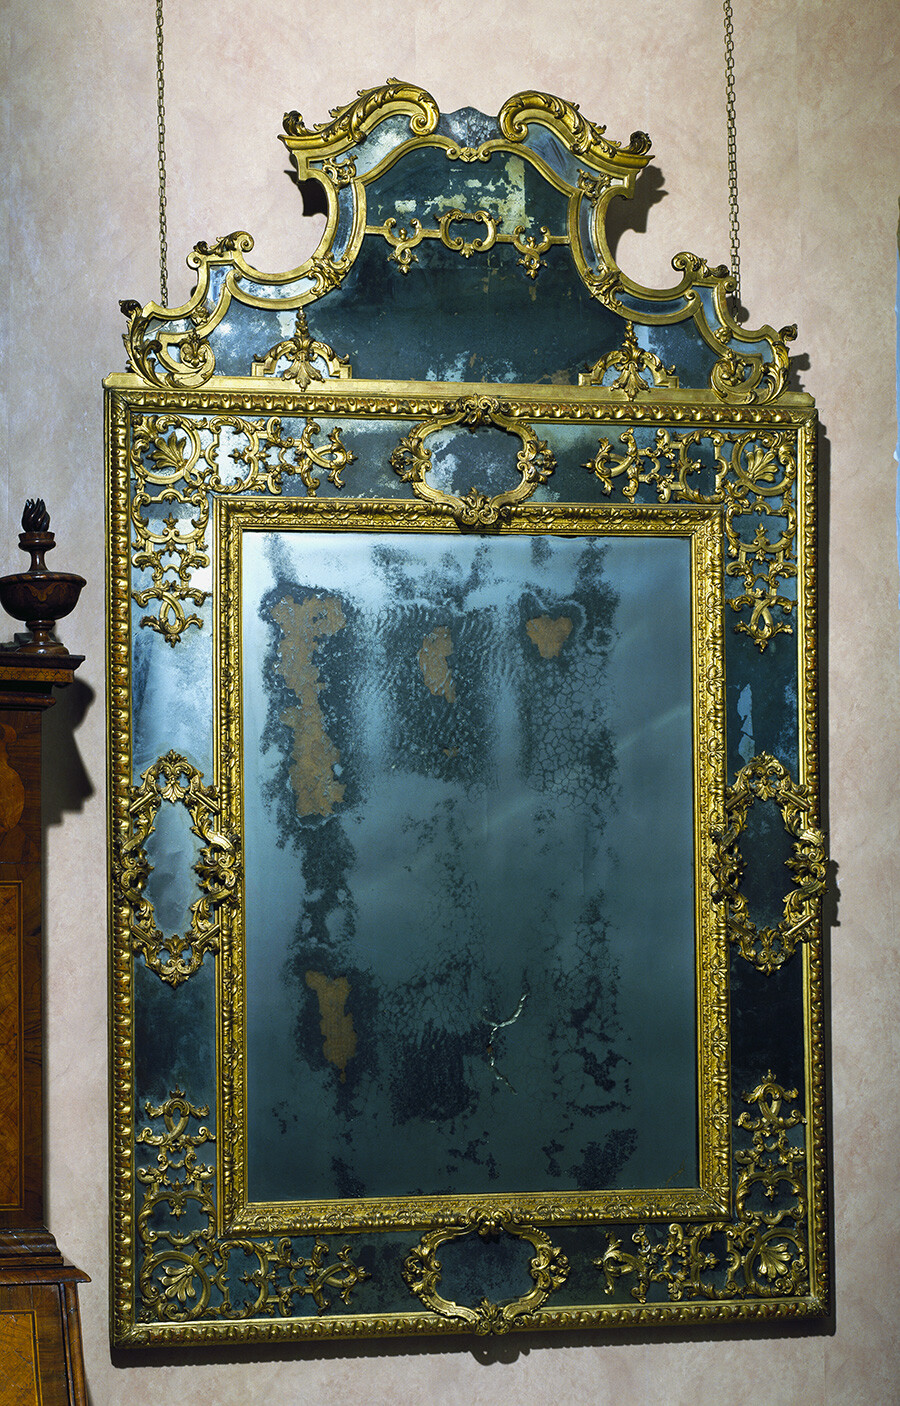 Specchio veneziano in stile barocco. Italia, fine XVII-inizio XVIII secolo. Questi specchi erano utilizzati dalle nobili bellezze russe dell’epoca